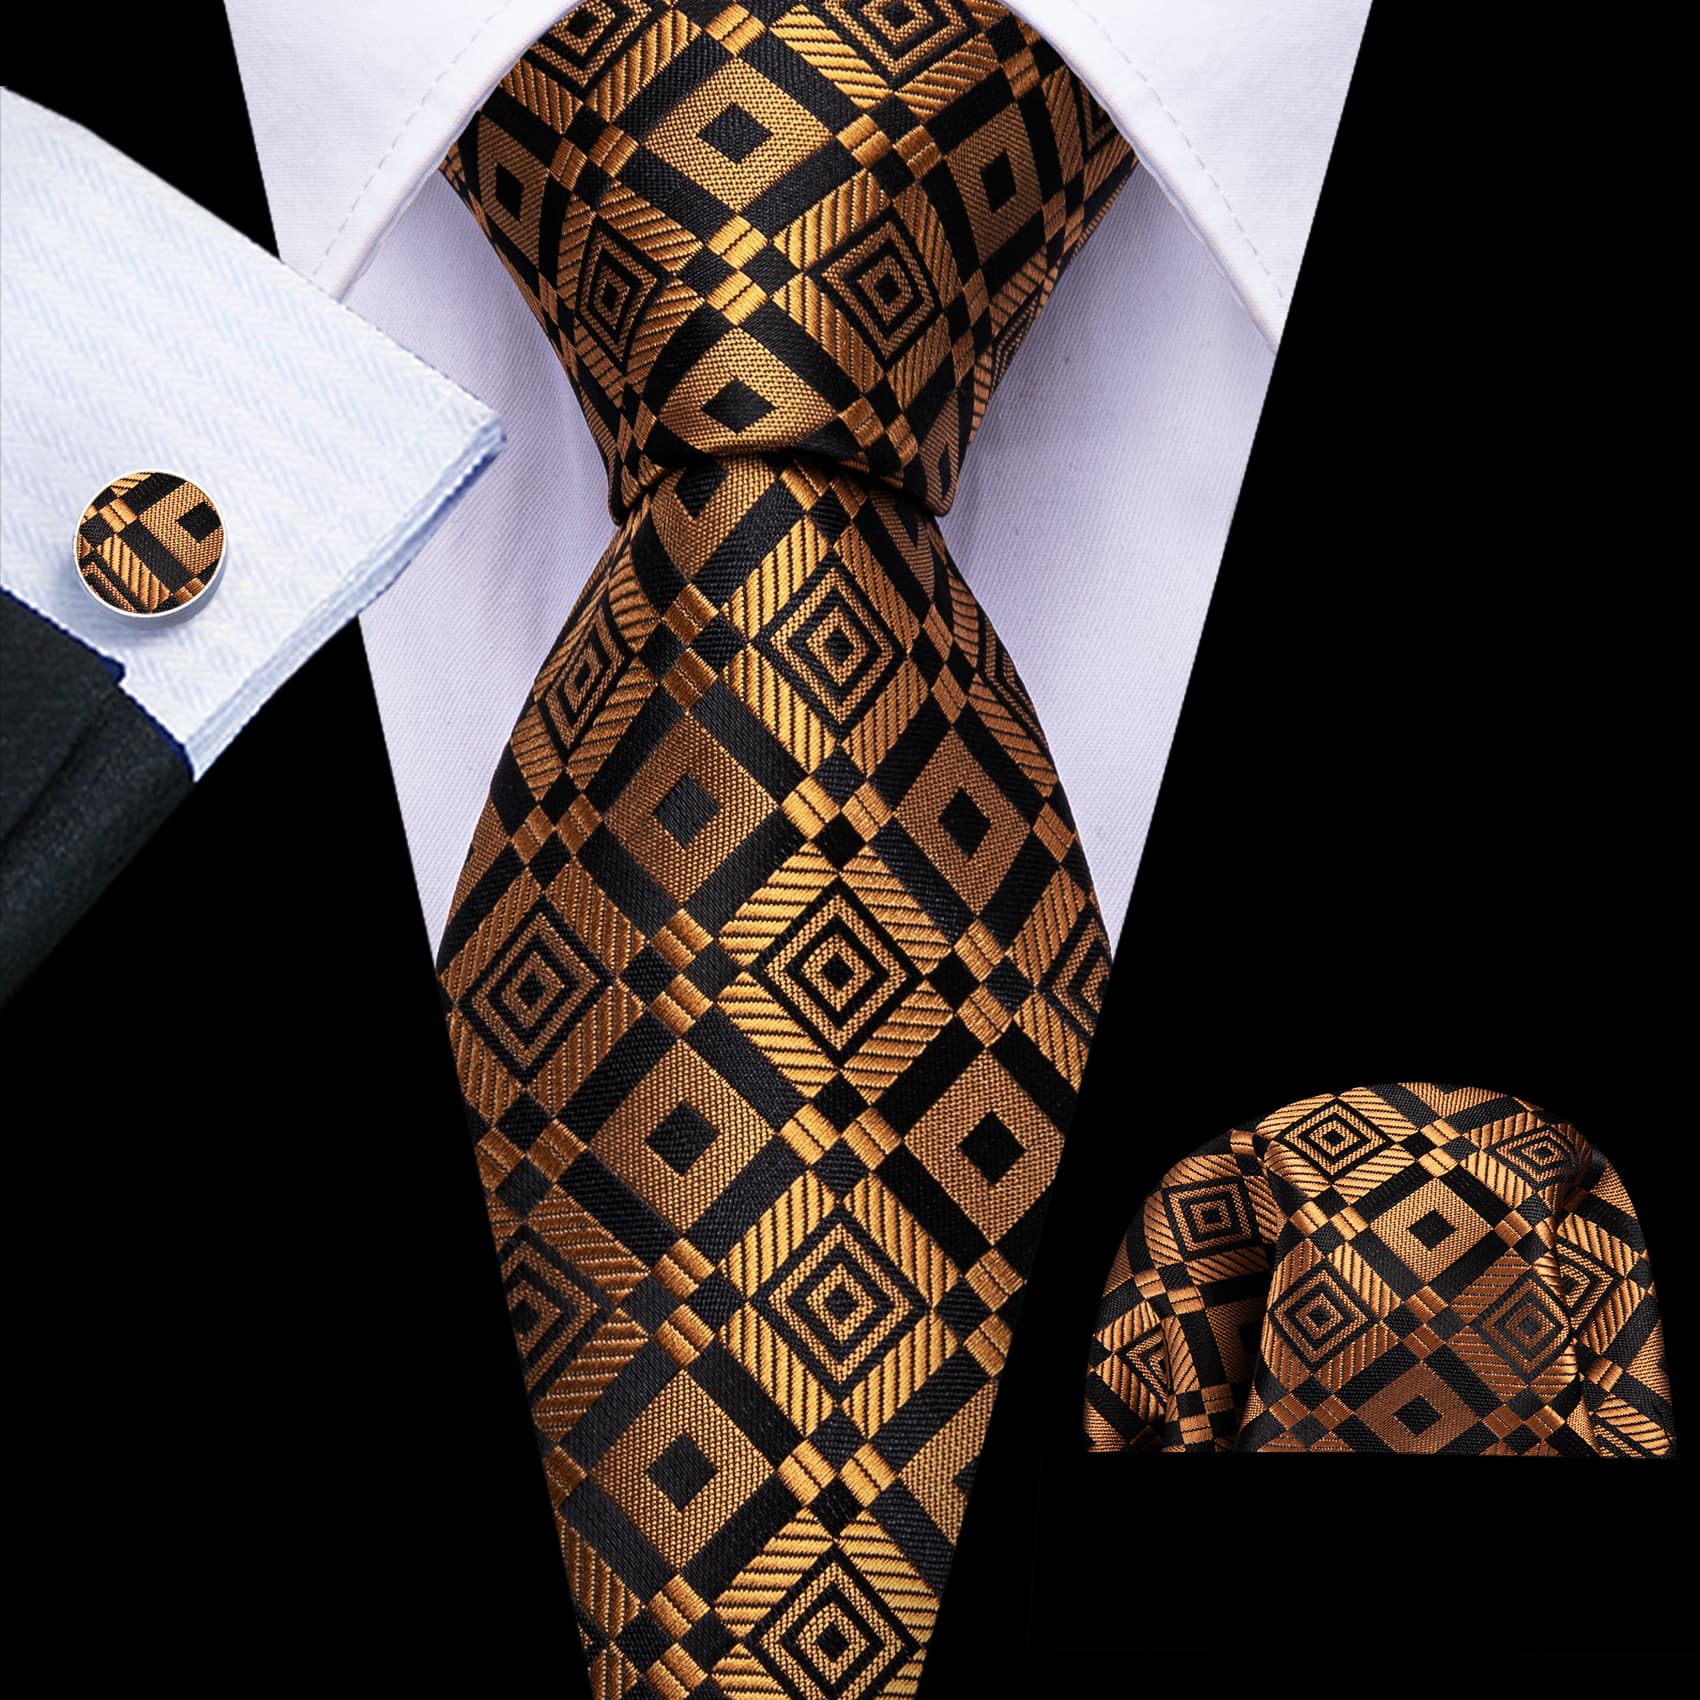  Tie Golden Black Square Pattern Necktie Hanky Cufflinks Set